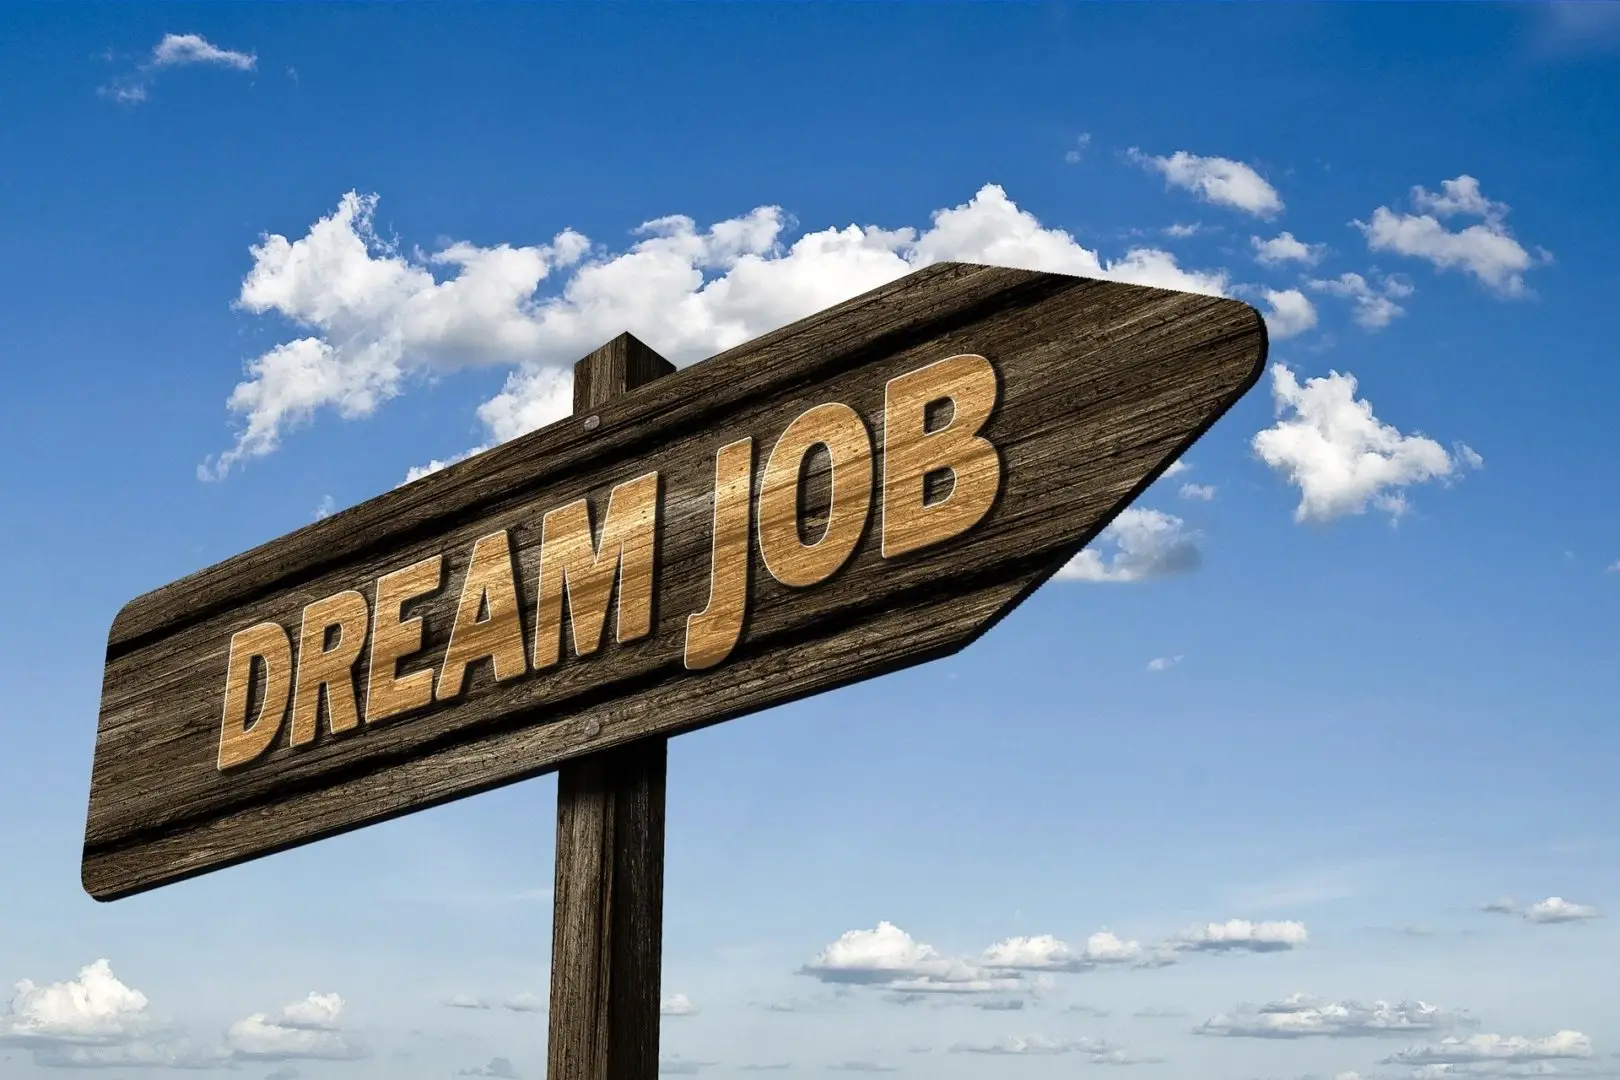 Wegweiser mit Aufschrift 'DREAM JOB' gegen einen blauen Himmel, symbolisiert berufliche Neuorientierung und Zielsetzung im Jobcoaching.